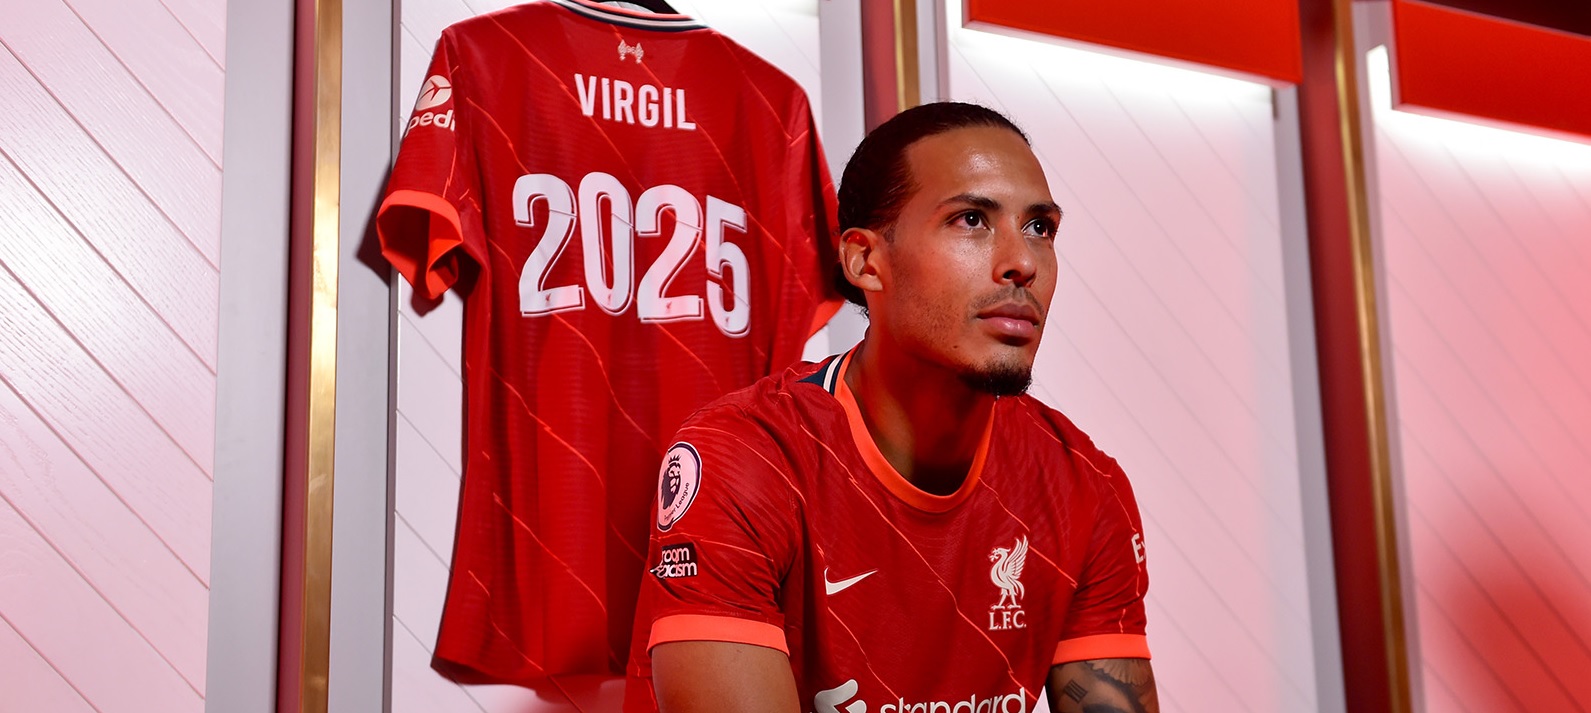 Oficial: Virgil van Dijk şi-a prelungit contractul cu Liverpool! Olandezul revine după accidentarea horror